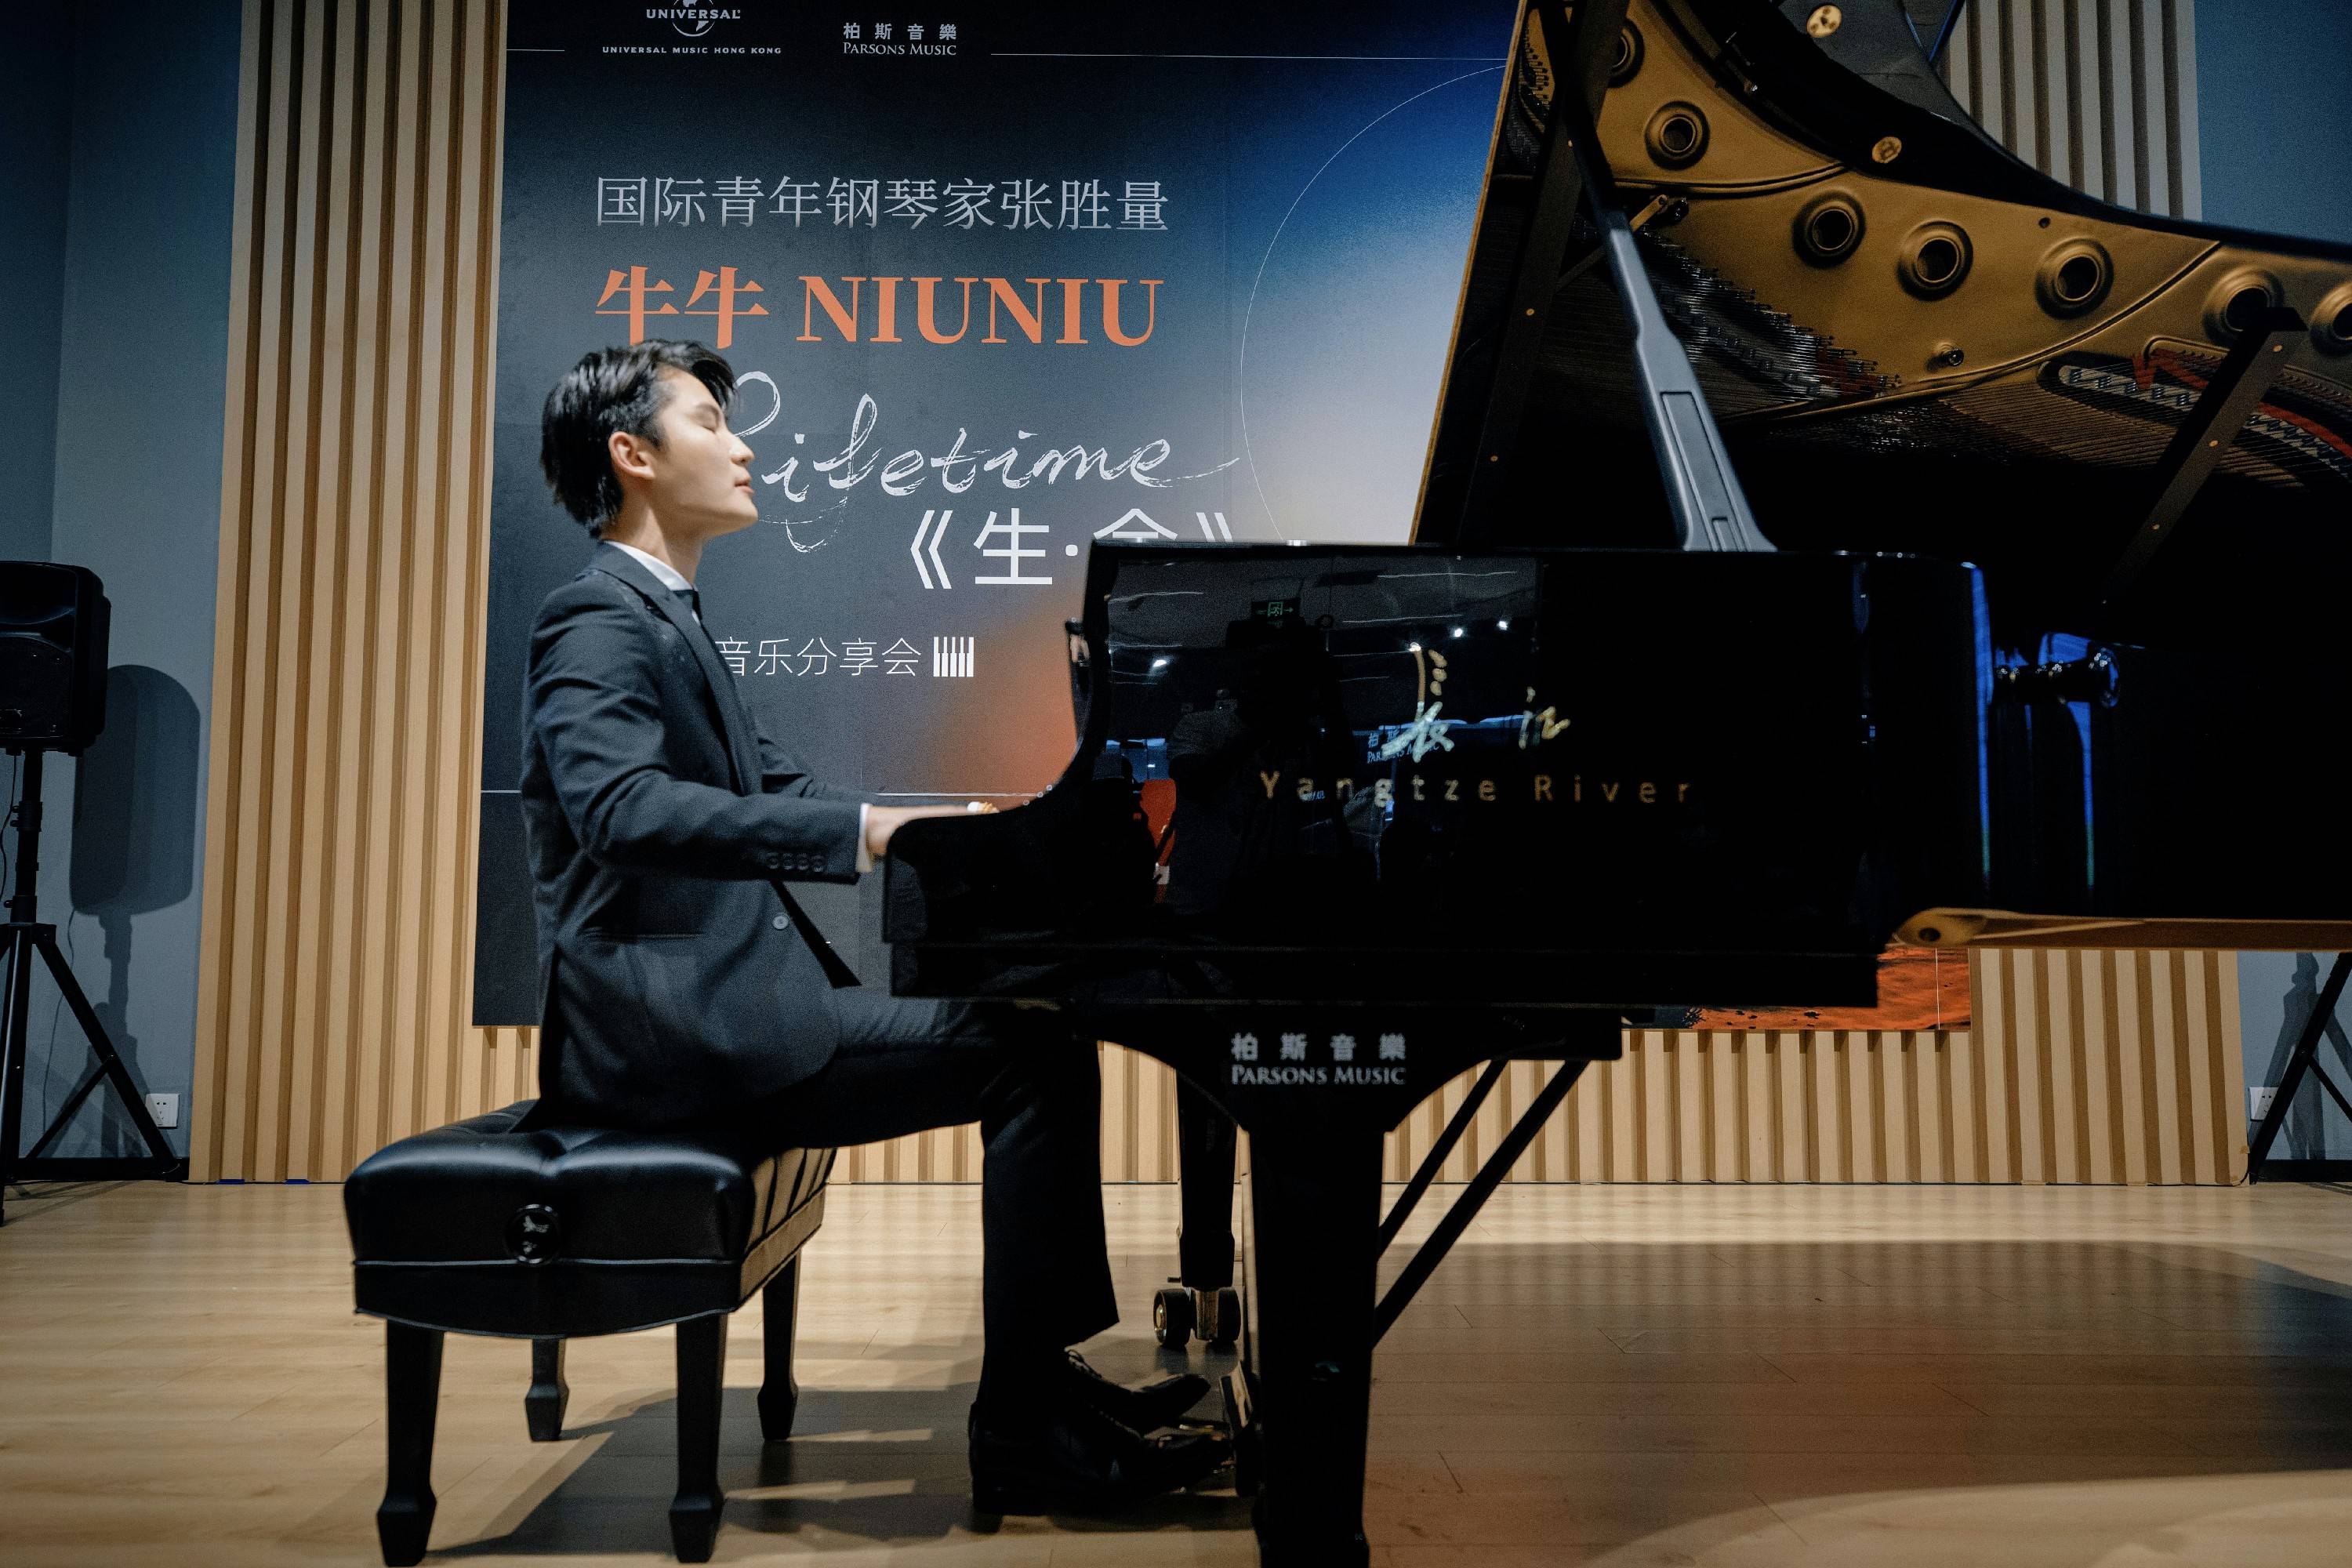 钢琴家牛牛新专辑分享会在北京举行